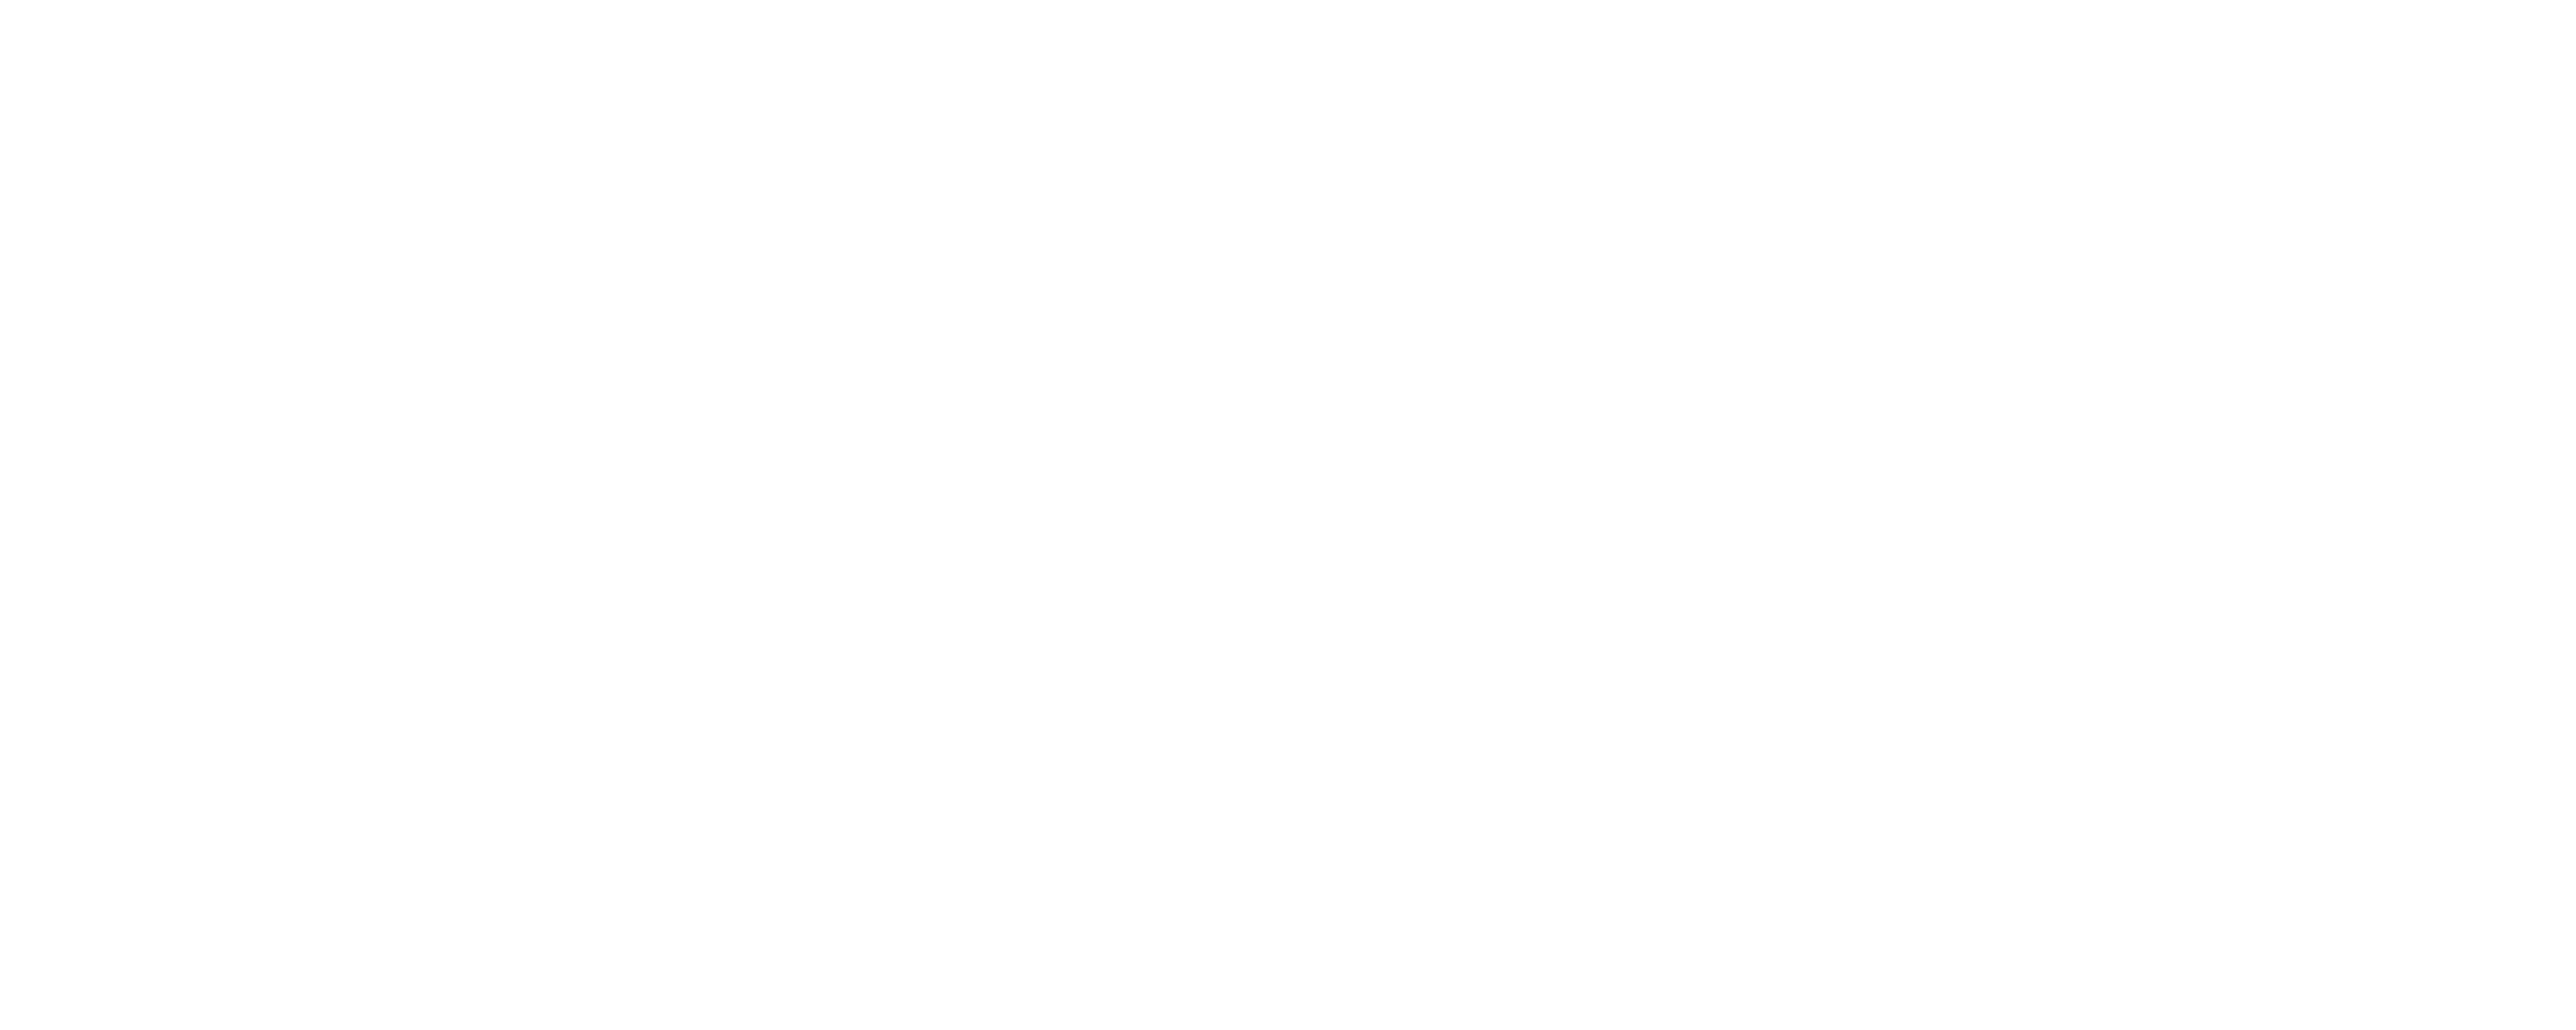 Arrify Logo